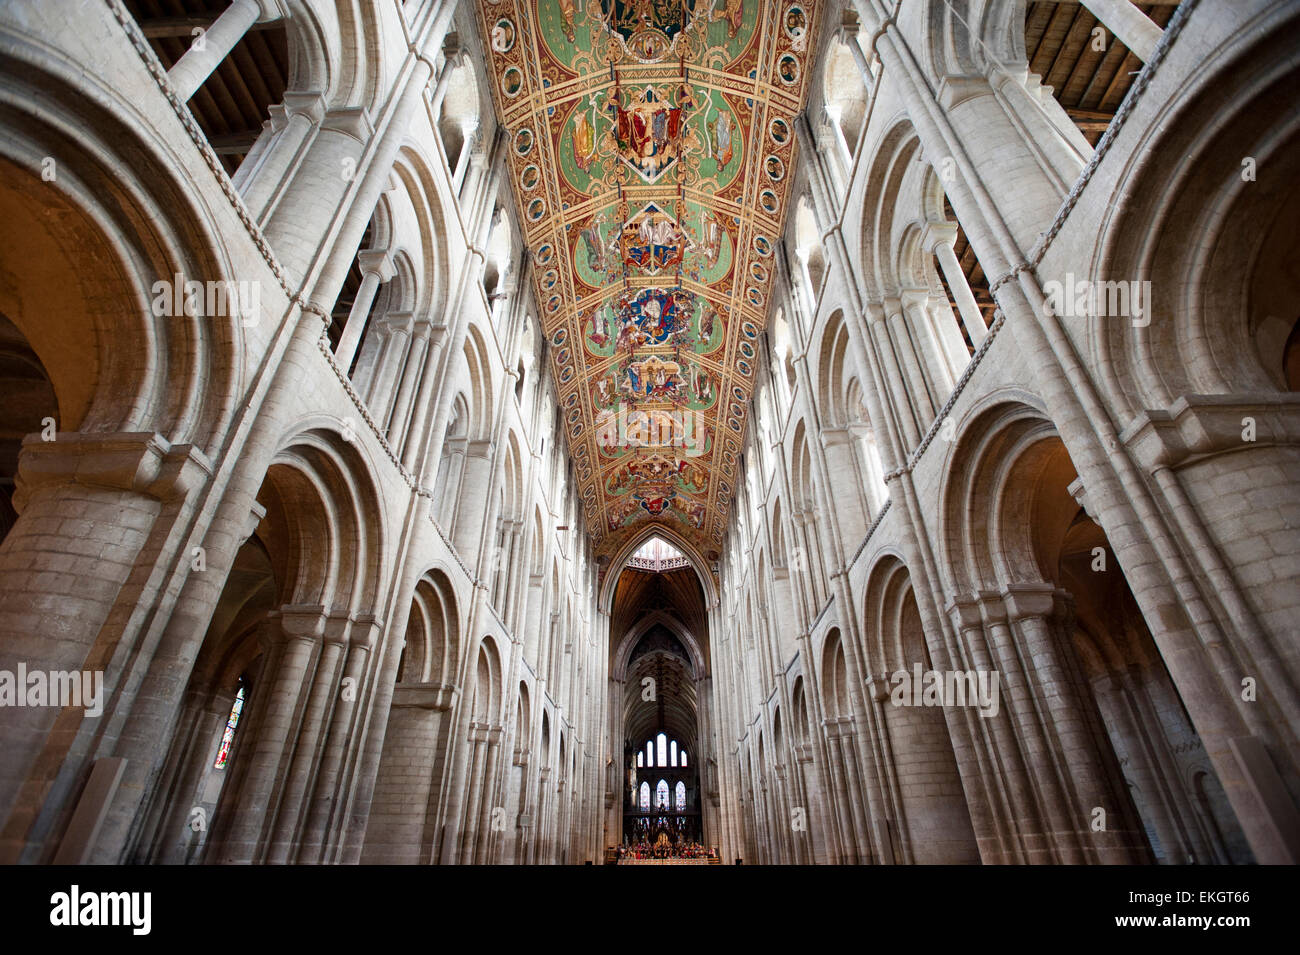 La navata centrale della Cattedrale di Ely, Cambridgeshire, costruita dai Normanni nel 1090. La navata è 2248m. (76 metri) lungo. Foto Stock